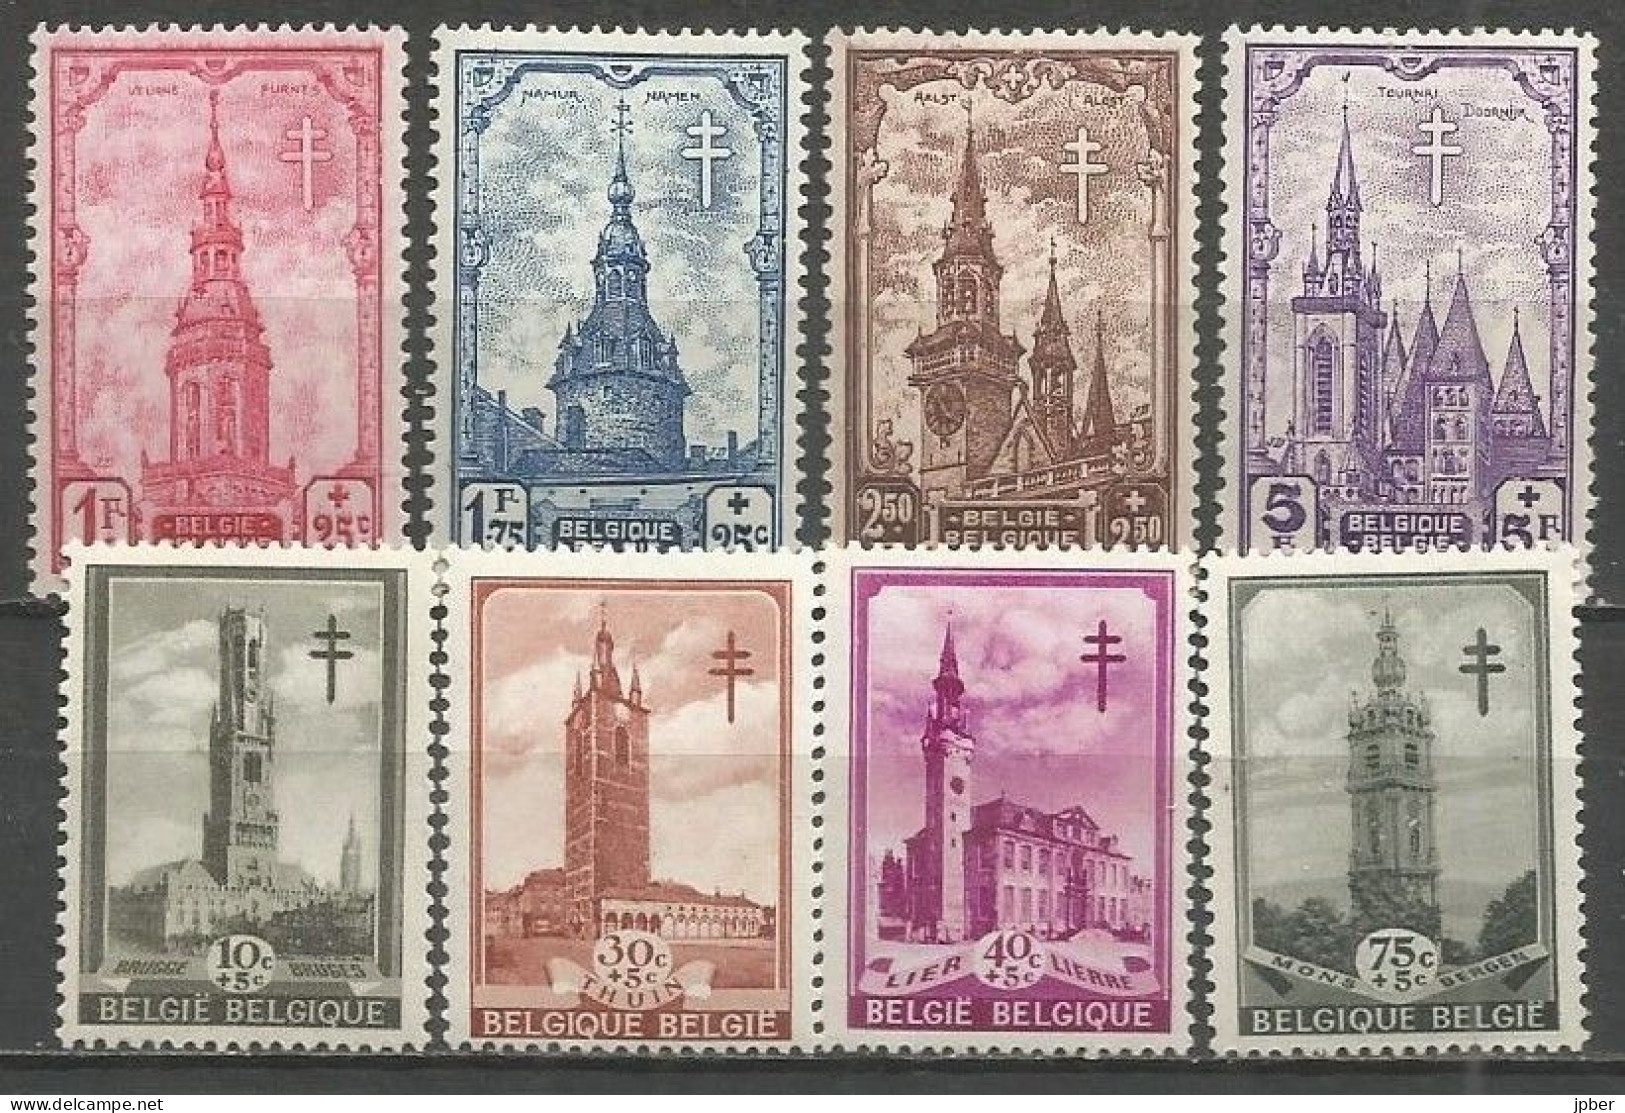 Belgique - Beffrois Brugge, Thuin, Lier, Mons, Veurne, Namur, Aalst, Tournai - N°519à526 ** - Unused Stamps